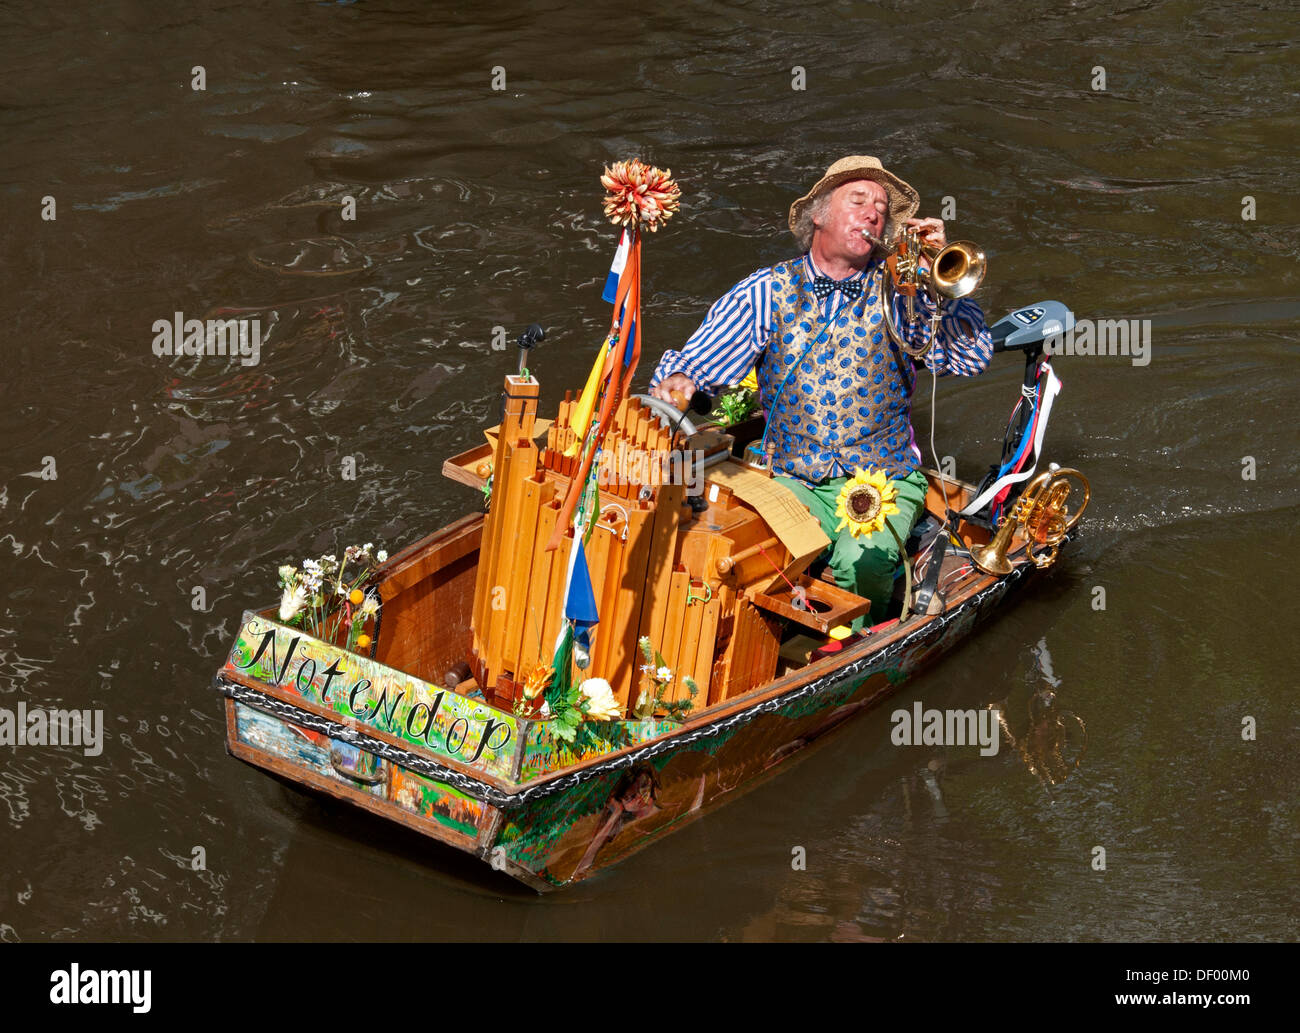 Un musicien ambulant ( Reinier Sijpkens ) à jouer de la trompette dans un organe bateau sur un canal à Amsterdam Pays-Bas Banque D'Images